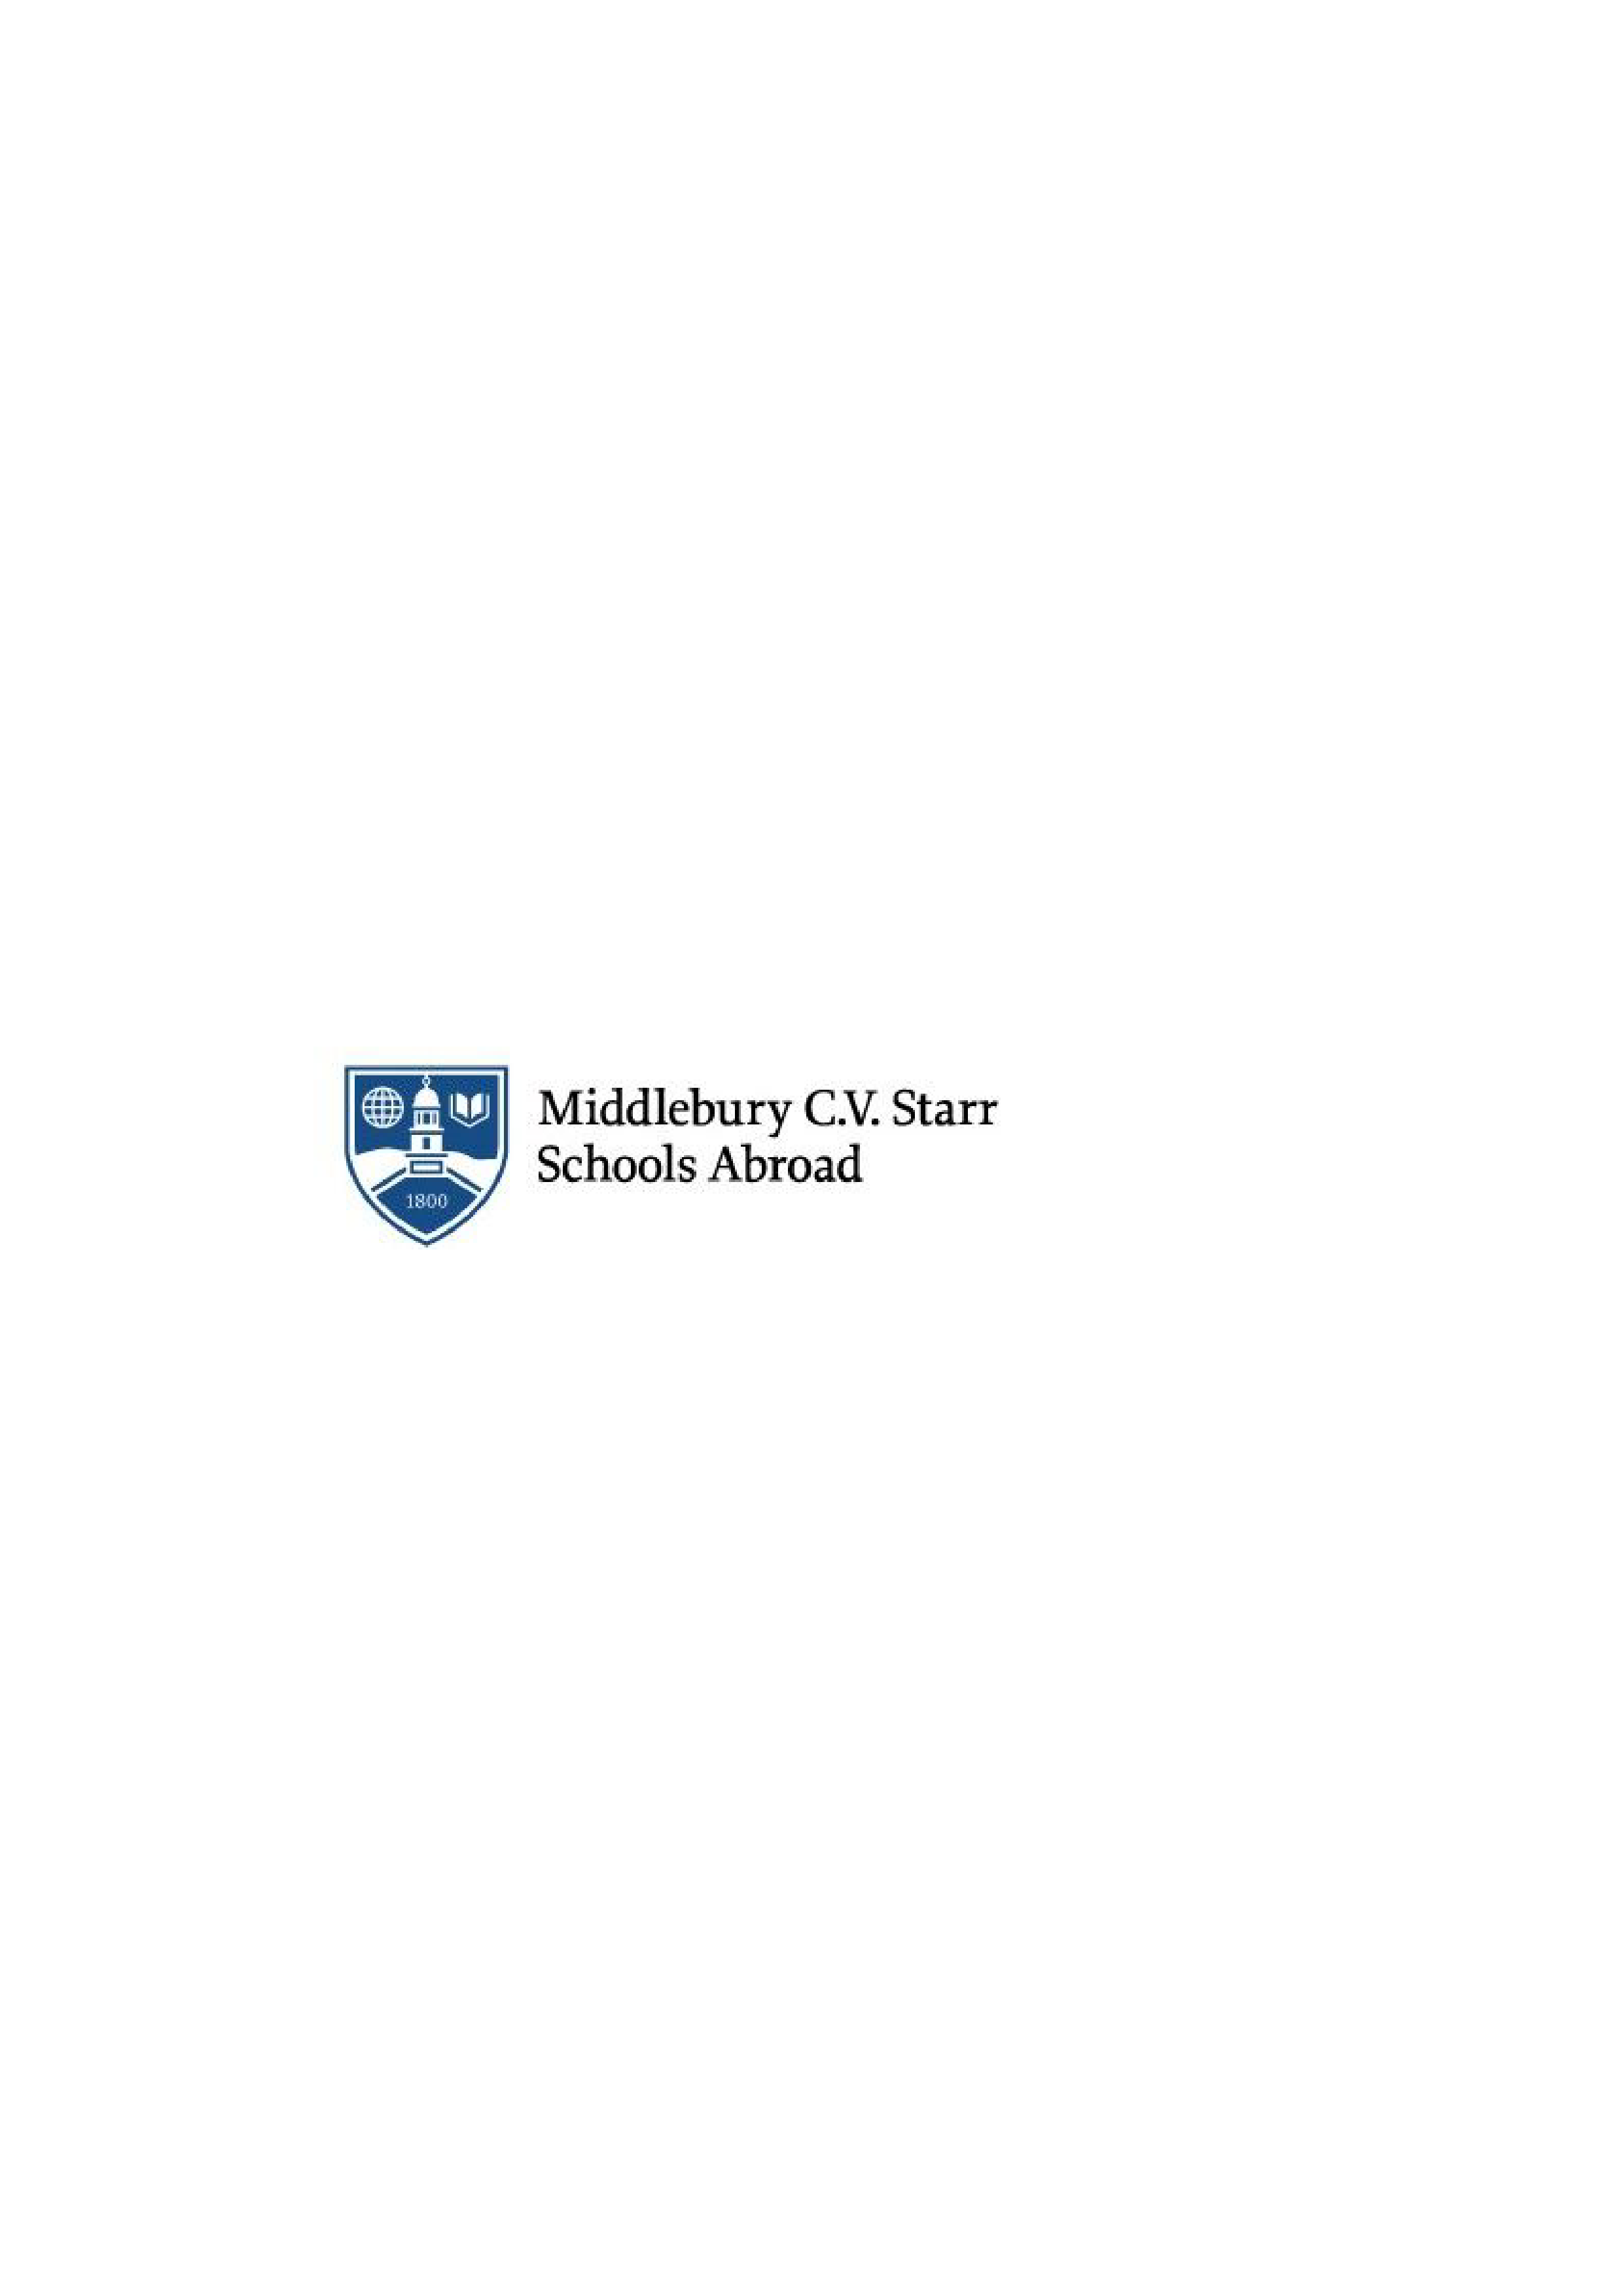 Tutor:innen zur sprachlich-akademischen Betreuung internationaler Studierender gesucht - Middlebury C.V. Starr School in Germany - Logo